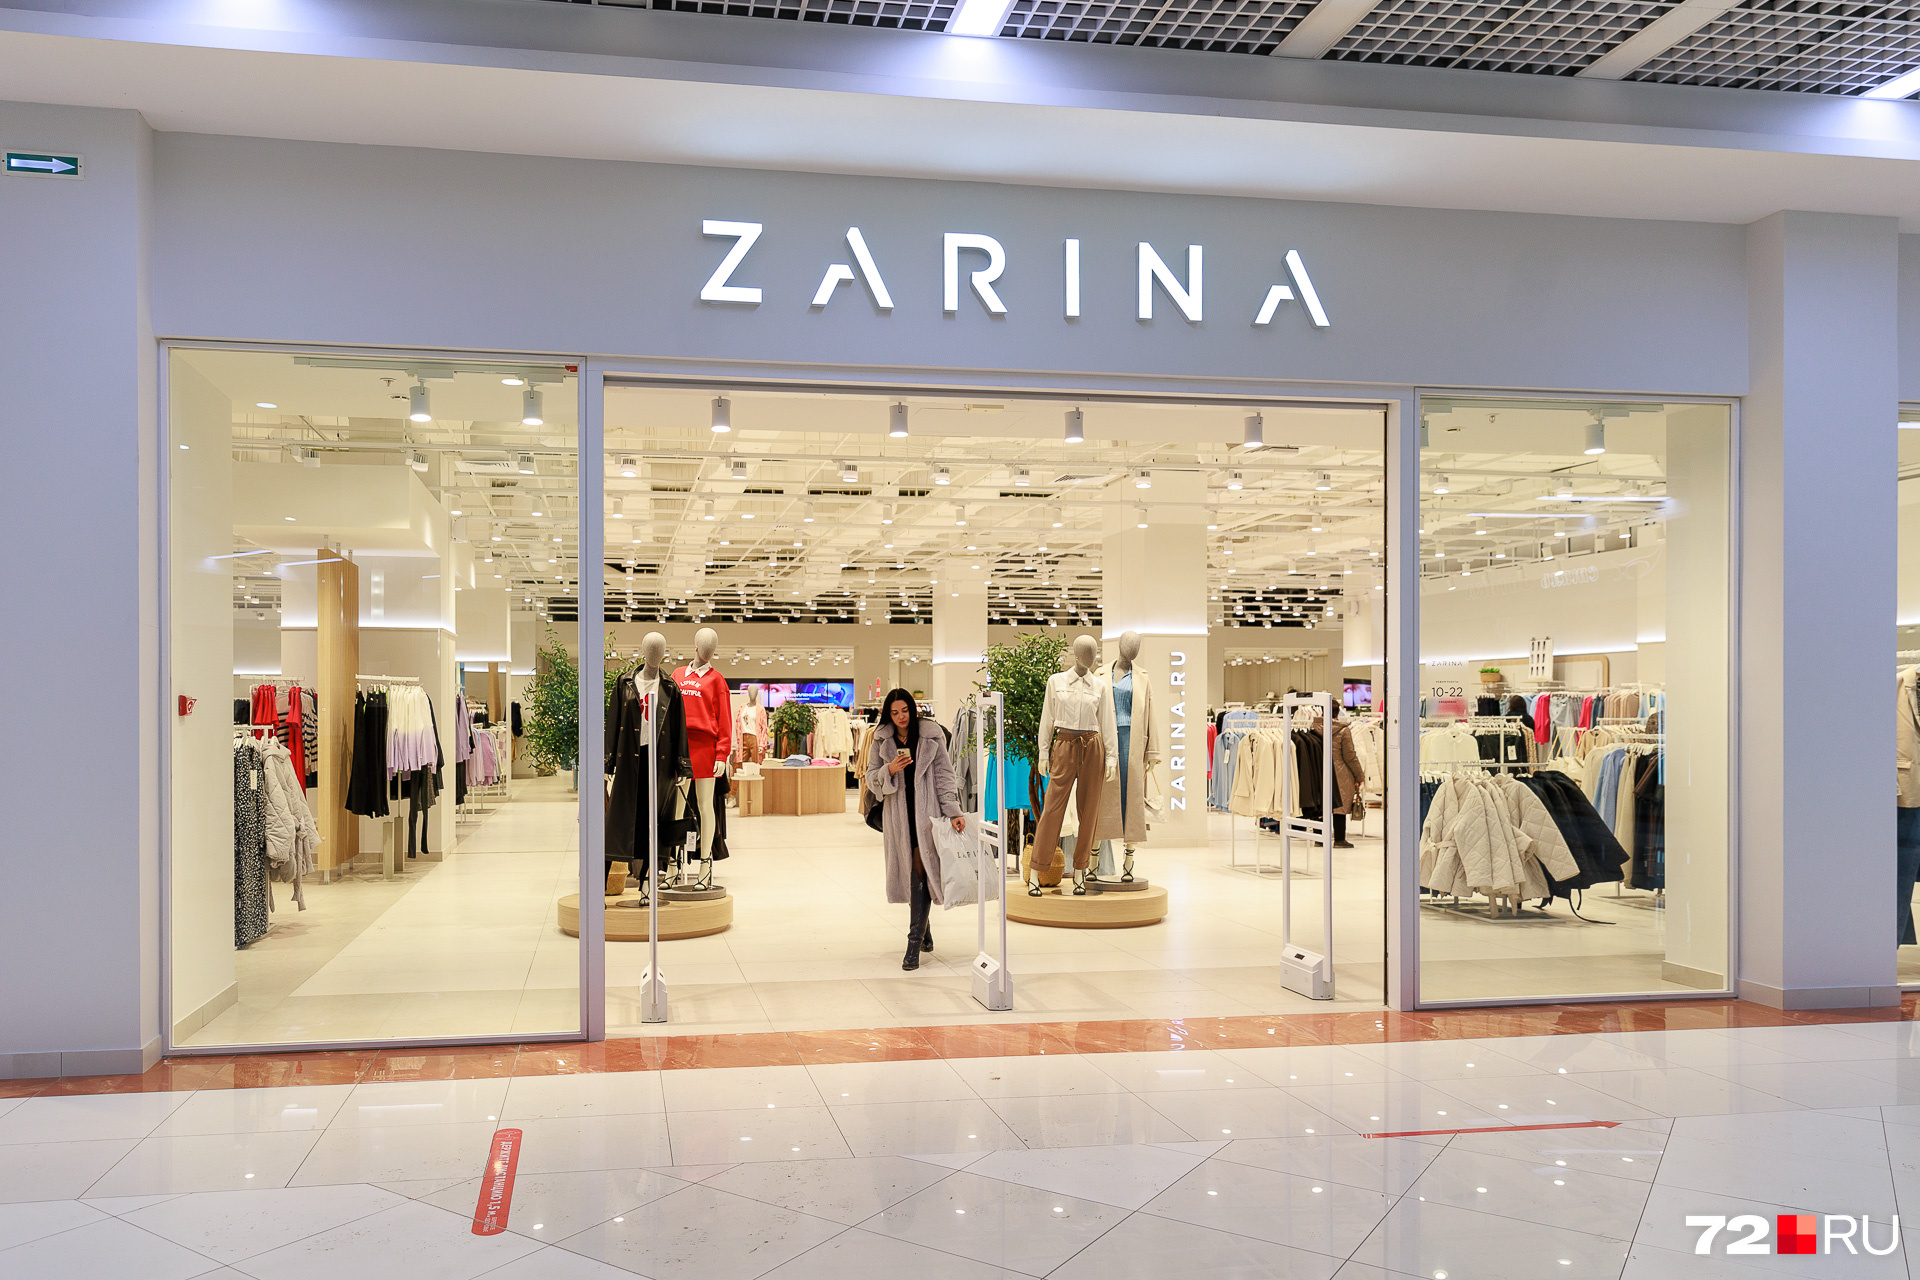 Женская одежда бренда Zarina тоже родом из России. До этого здесь была Bershka, входящая в состав испанской группы Inditex